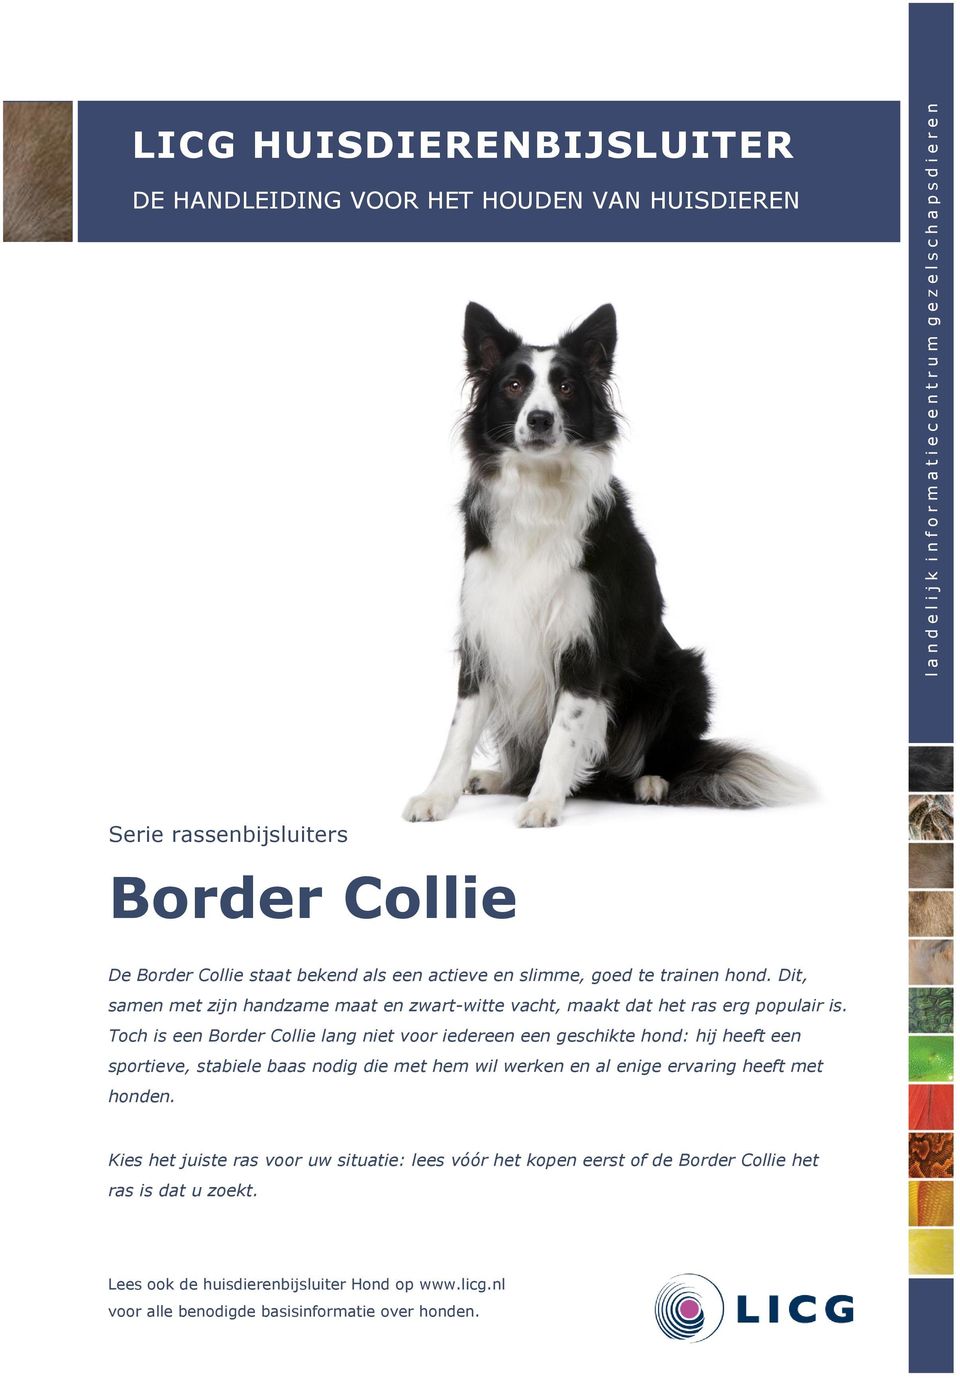 Toch is een Border Collie lang niet voor iedereen een geschikte hond: hij heeft een sportieve, stabiele baas nodig die met hem wil werken en al enige ervaring heeft met honden.